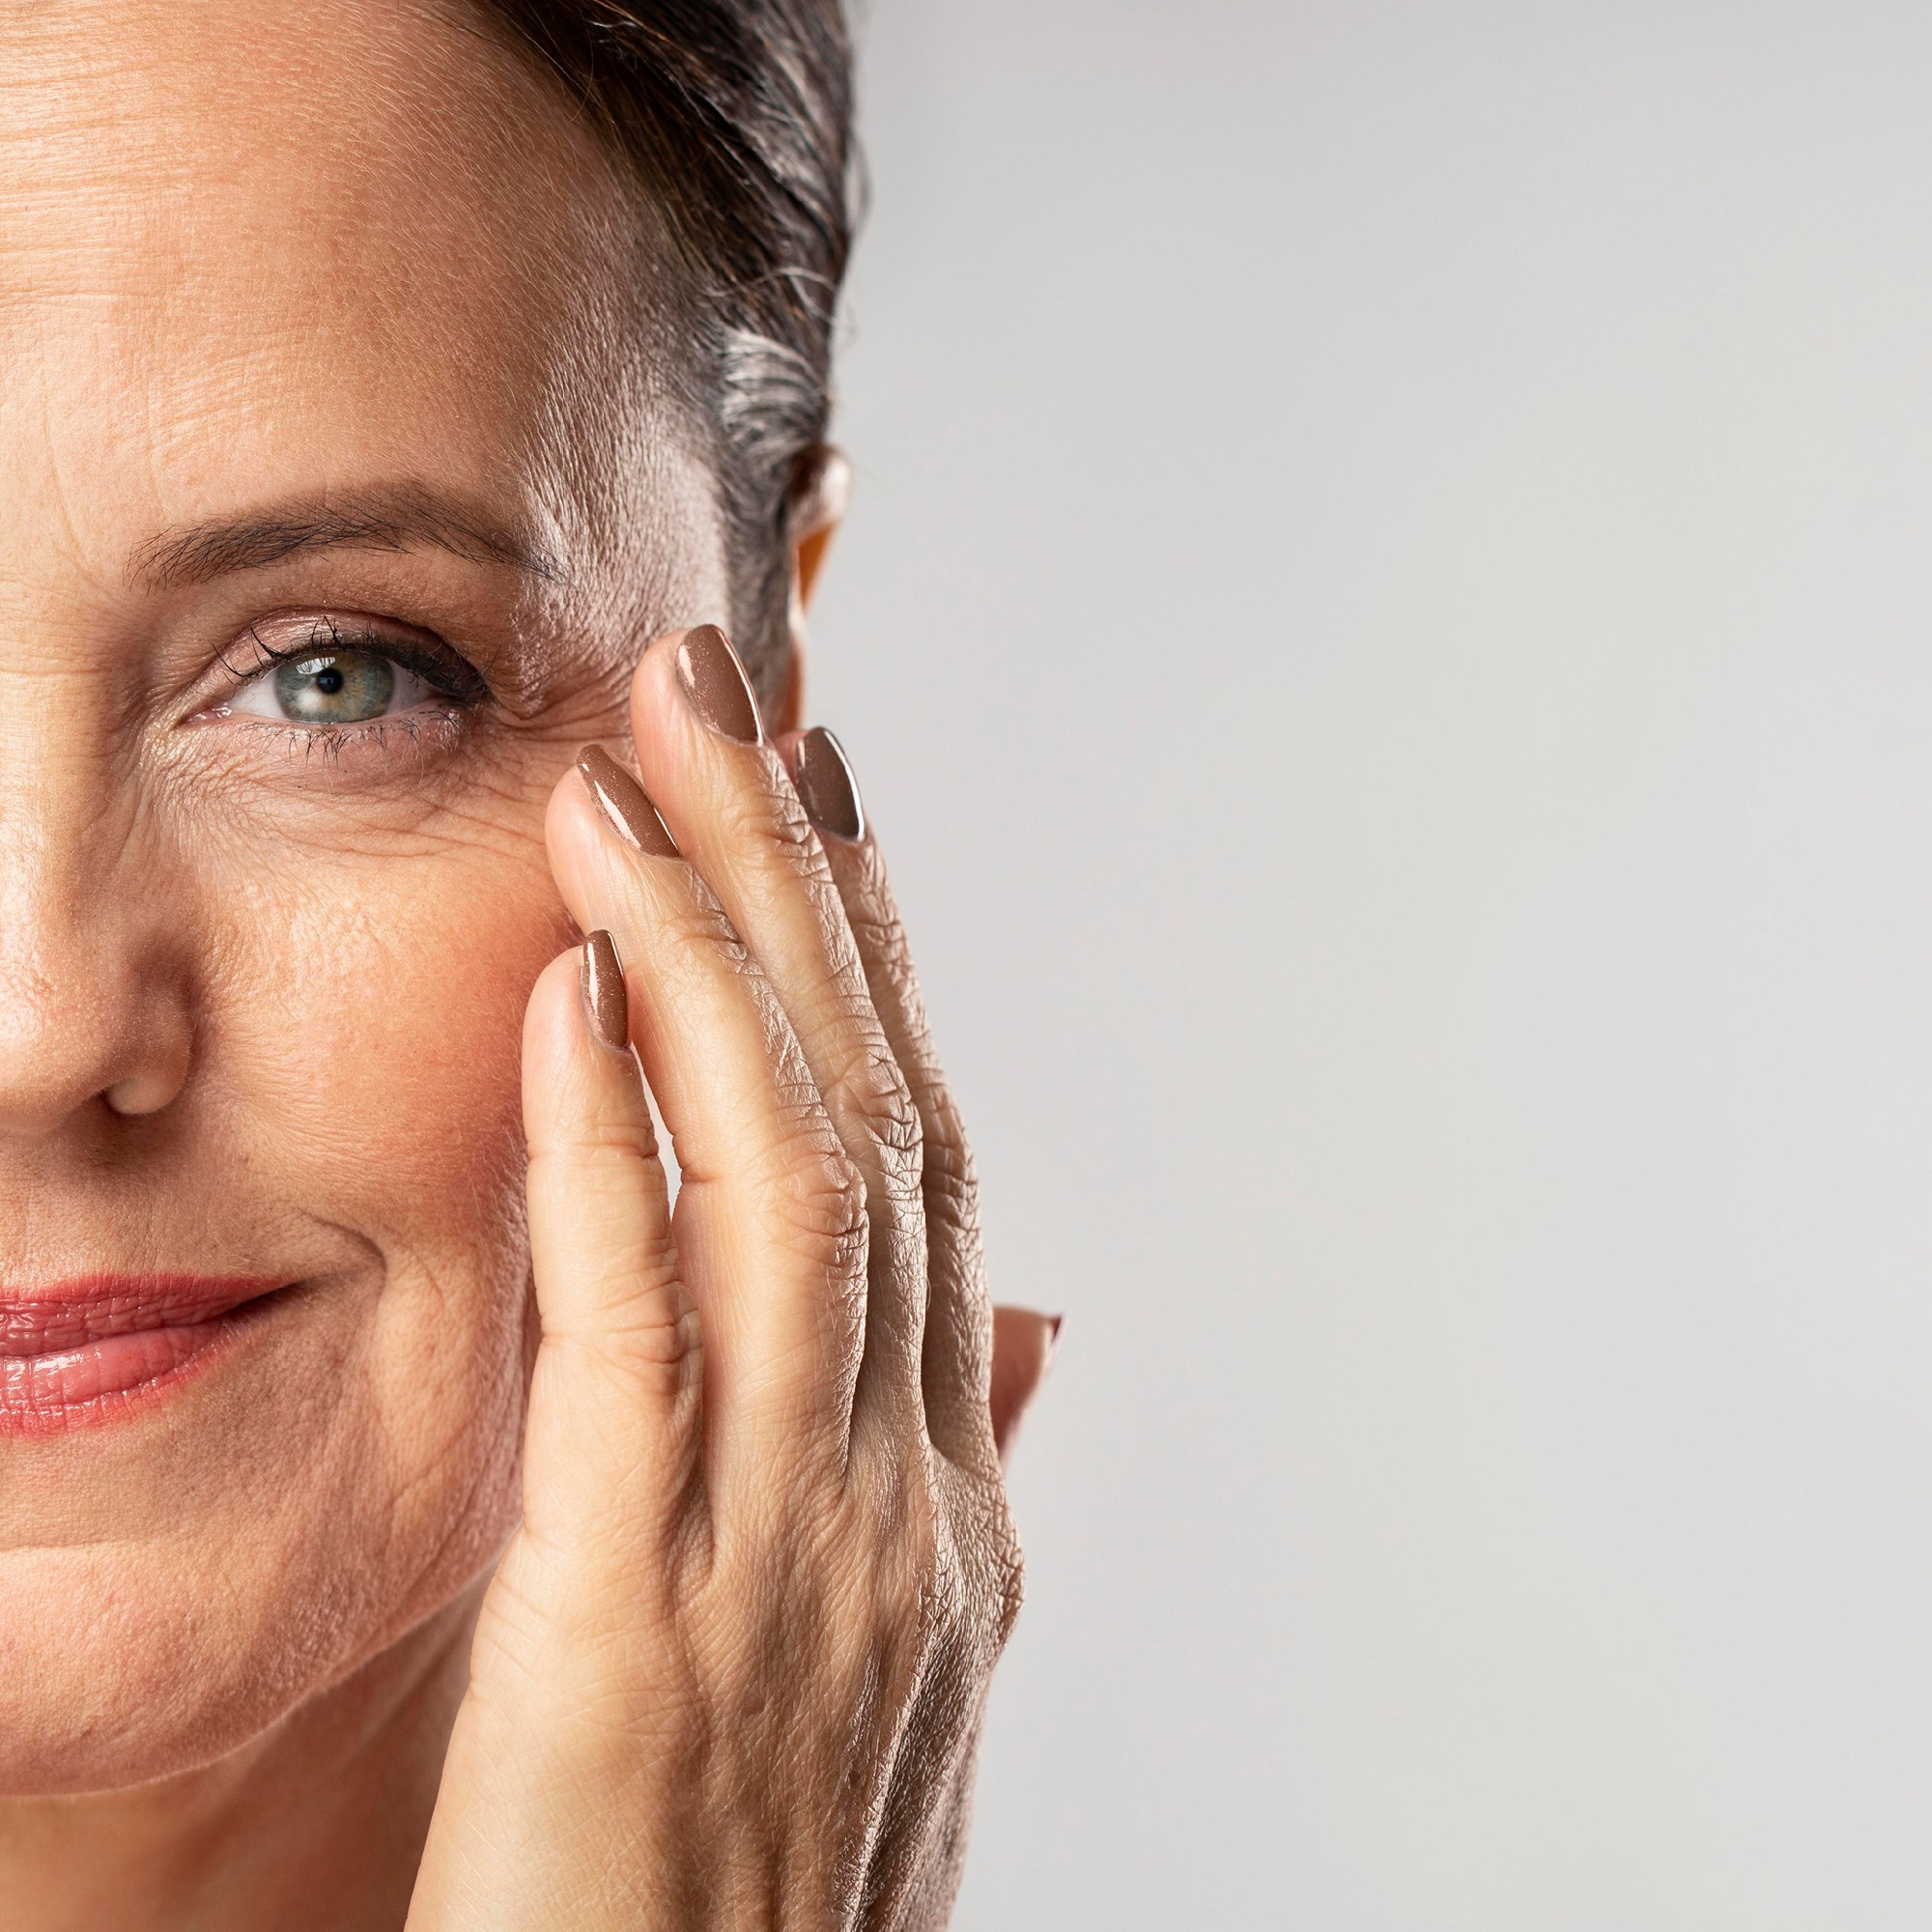 Az arcod 5 területe, ami megváltozik az öregedéstől 